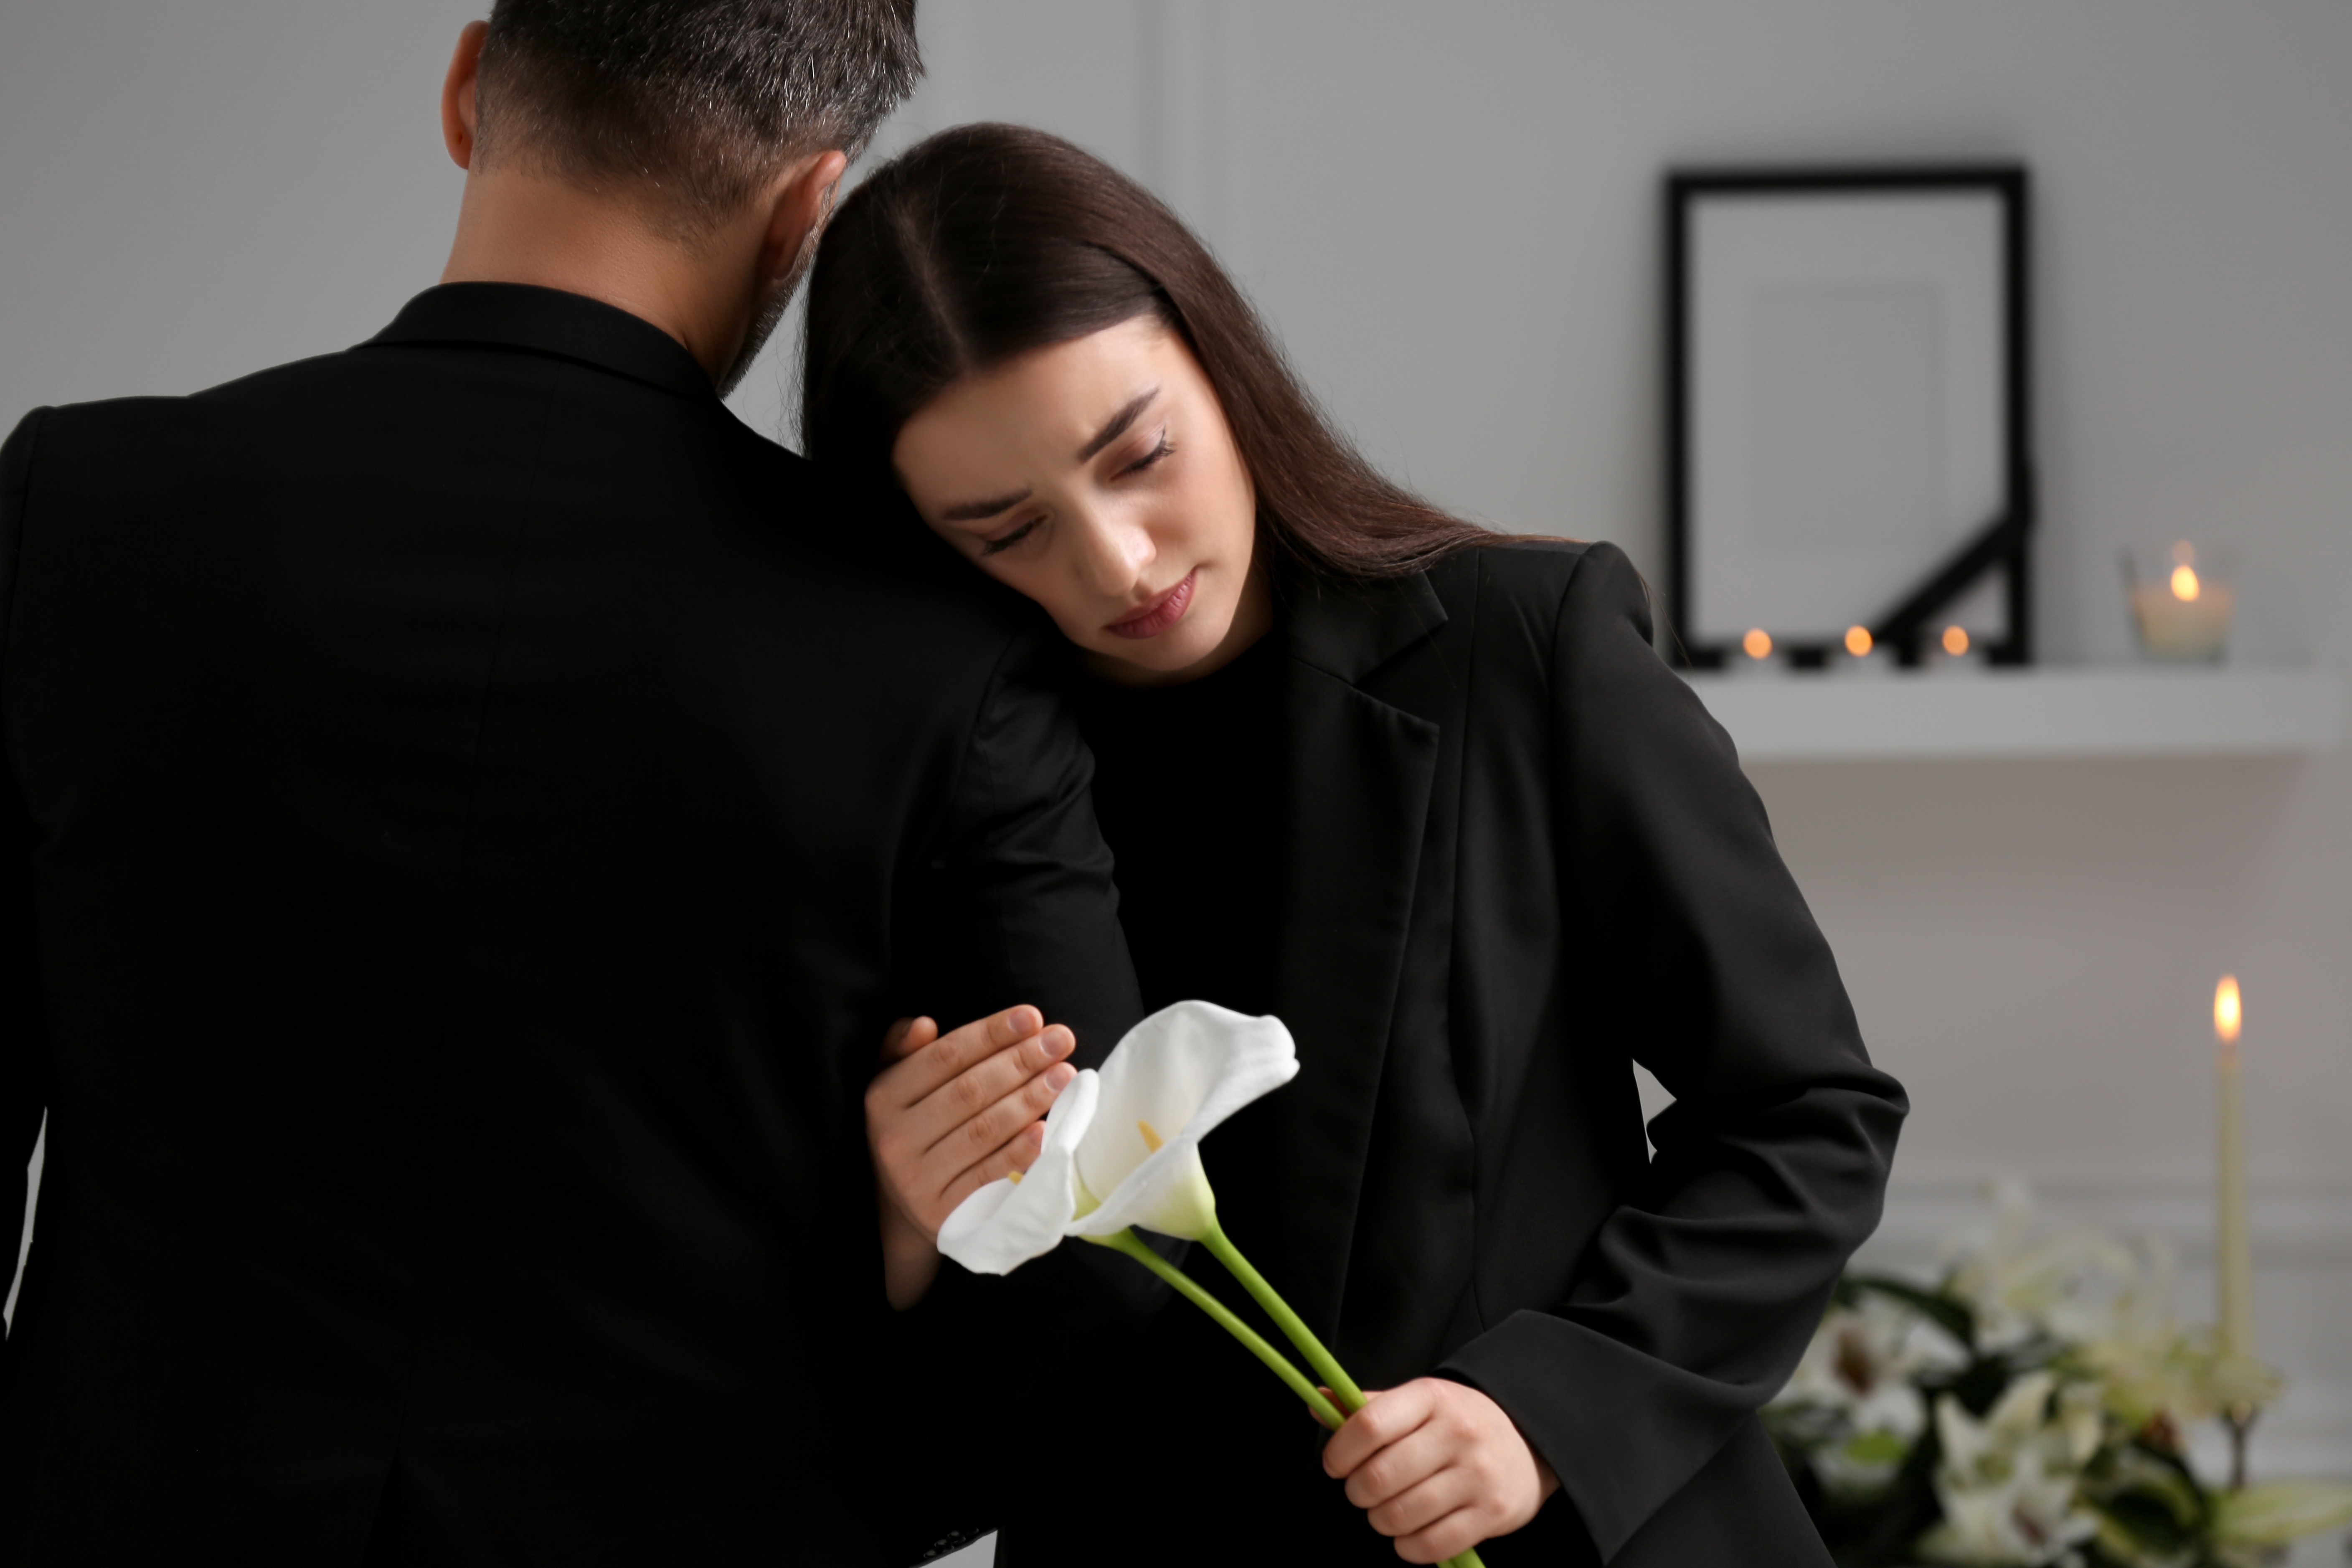 Ein traurig dreinblickendes Paar bei einer Beerdigung | Quelle: Shuttertsock